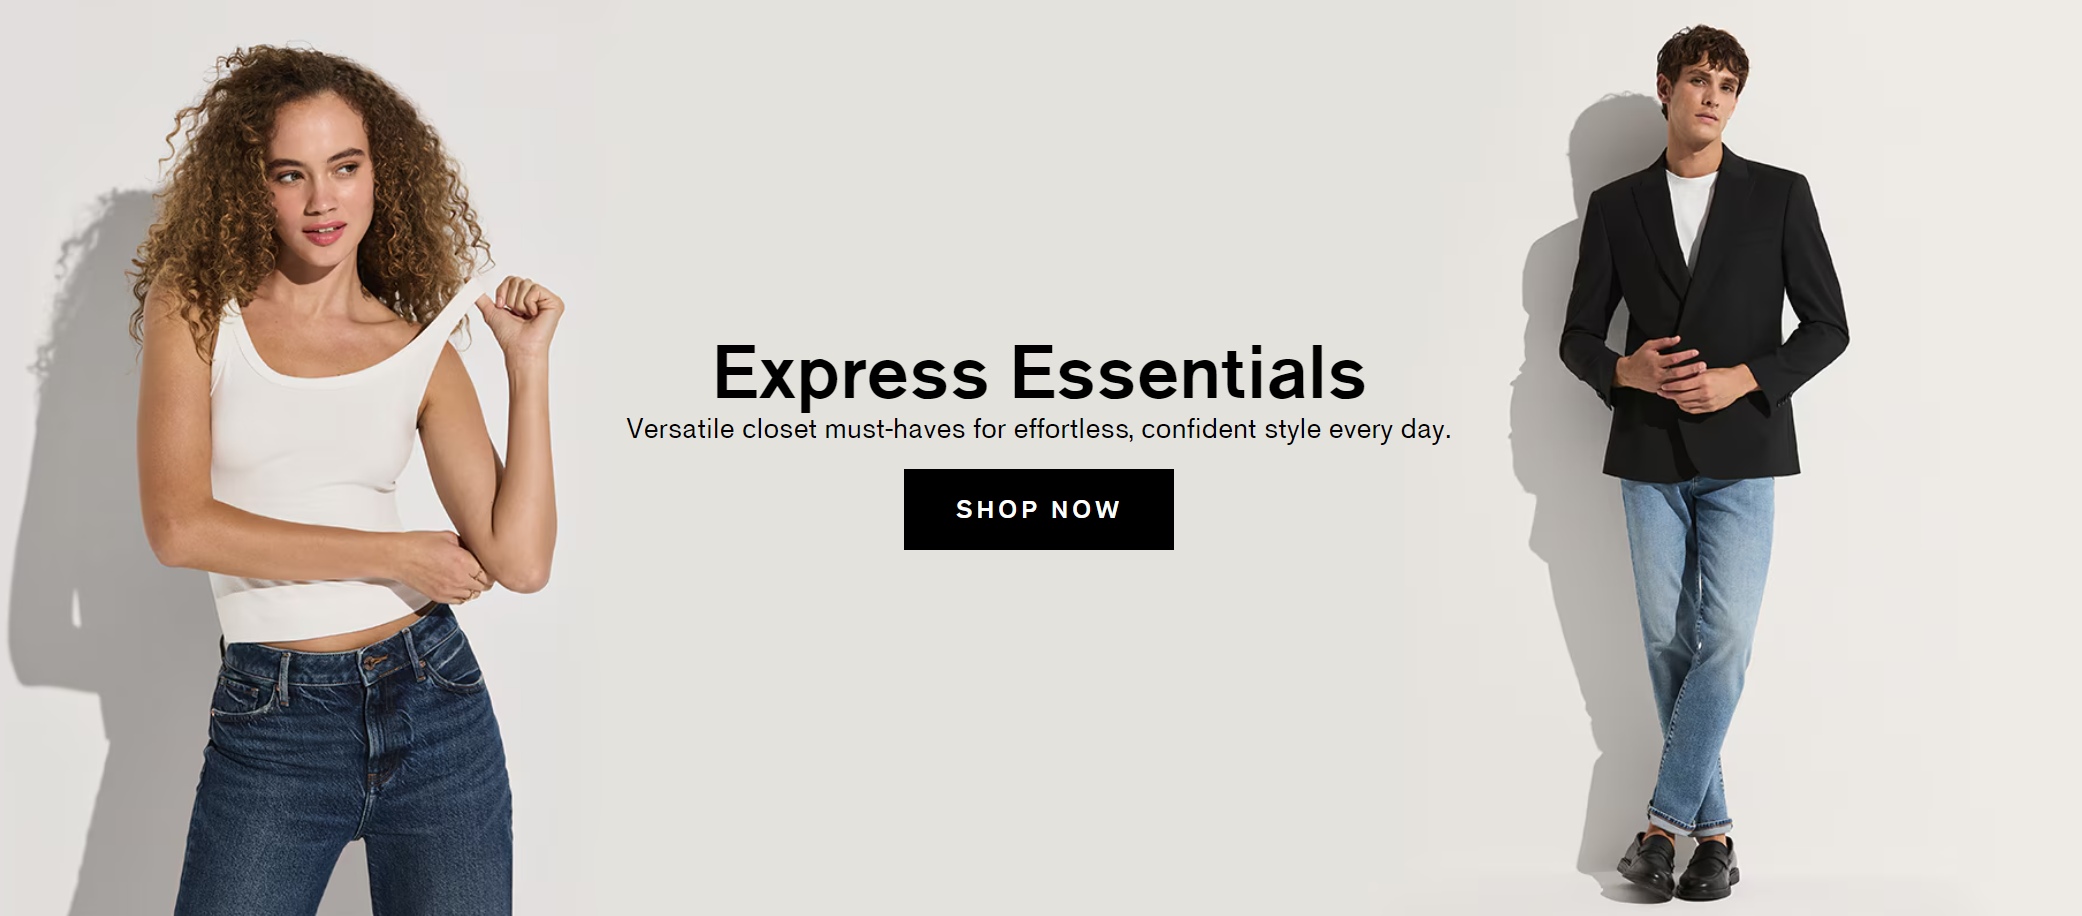 WHP Global成立新运营平台，收购知名服饰品牌Express